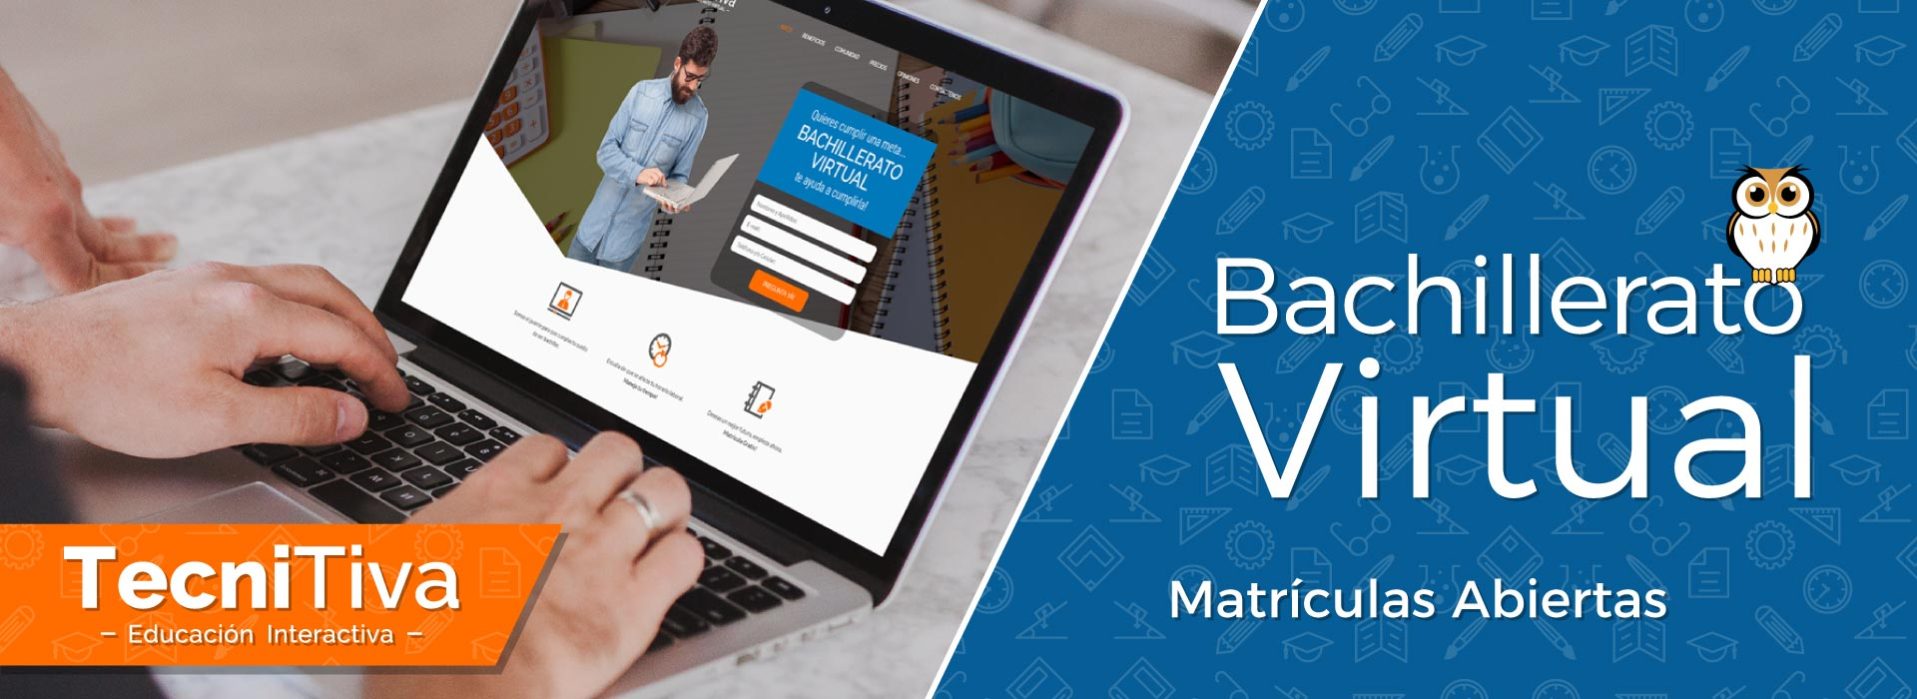 Bachillerato virtual Matricula Gratis online.Tecnitiva plataforma virtual